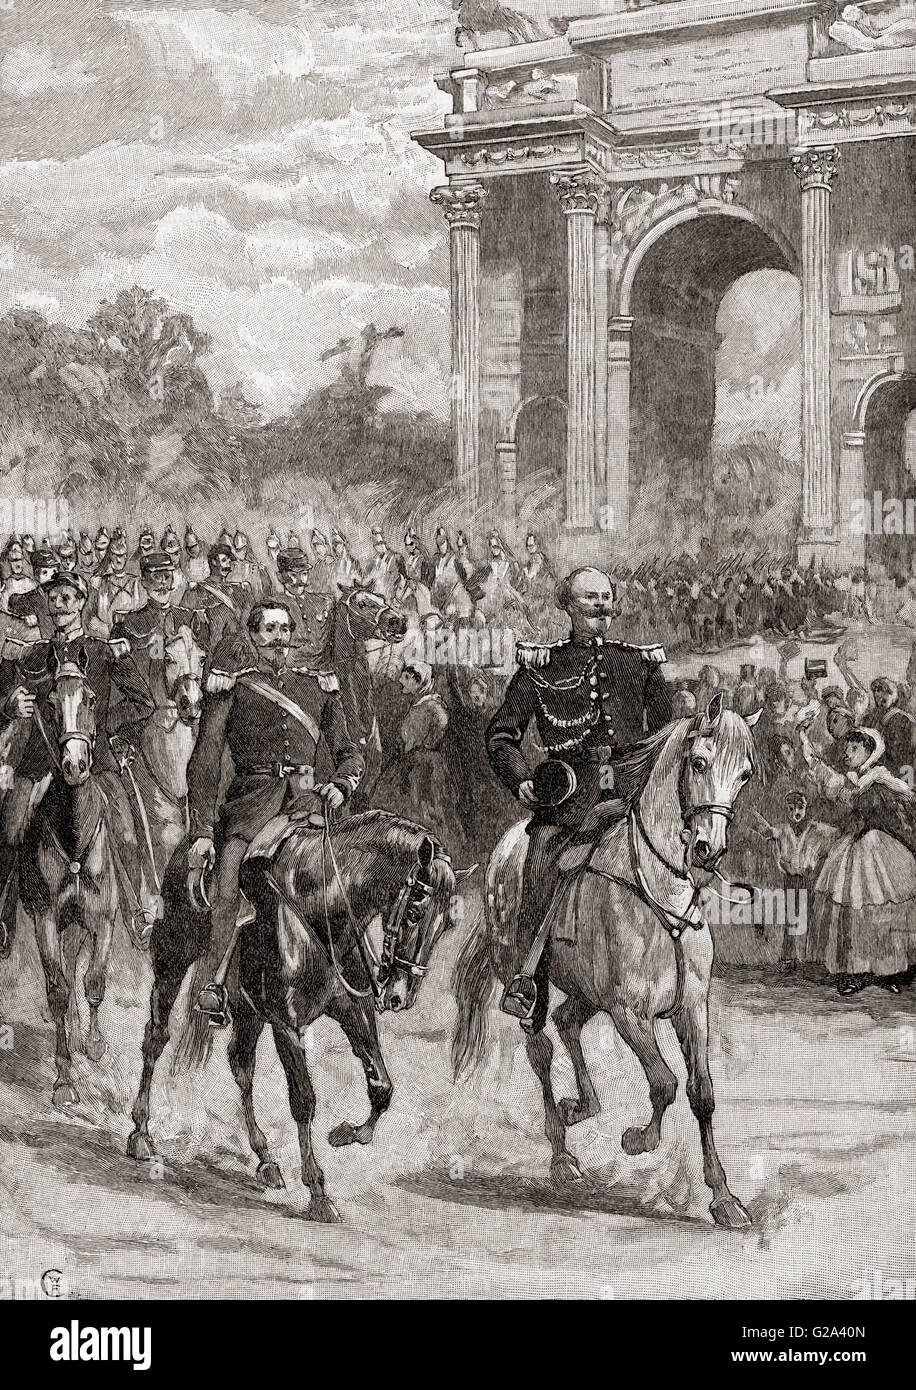 La voce di Napoleone III, destra, 1808-1873 e Vittorio Emanuele II, sinistra, 1820-1878, in Milano, Italia, 8 giugno 1859 durante la Seconda Guerra d'Indipendenza italiana. Foto Stock